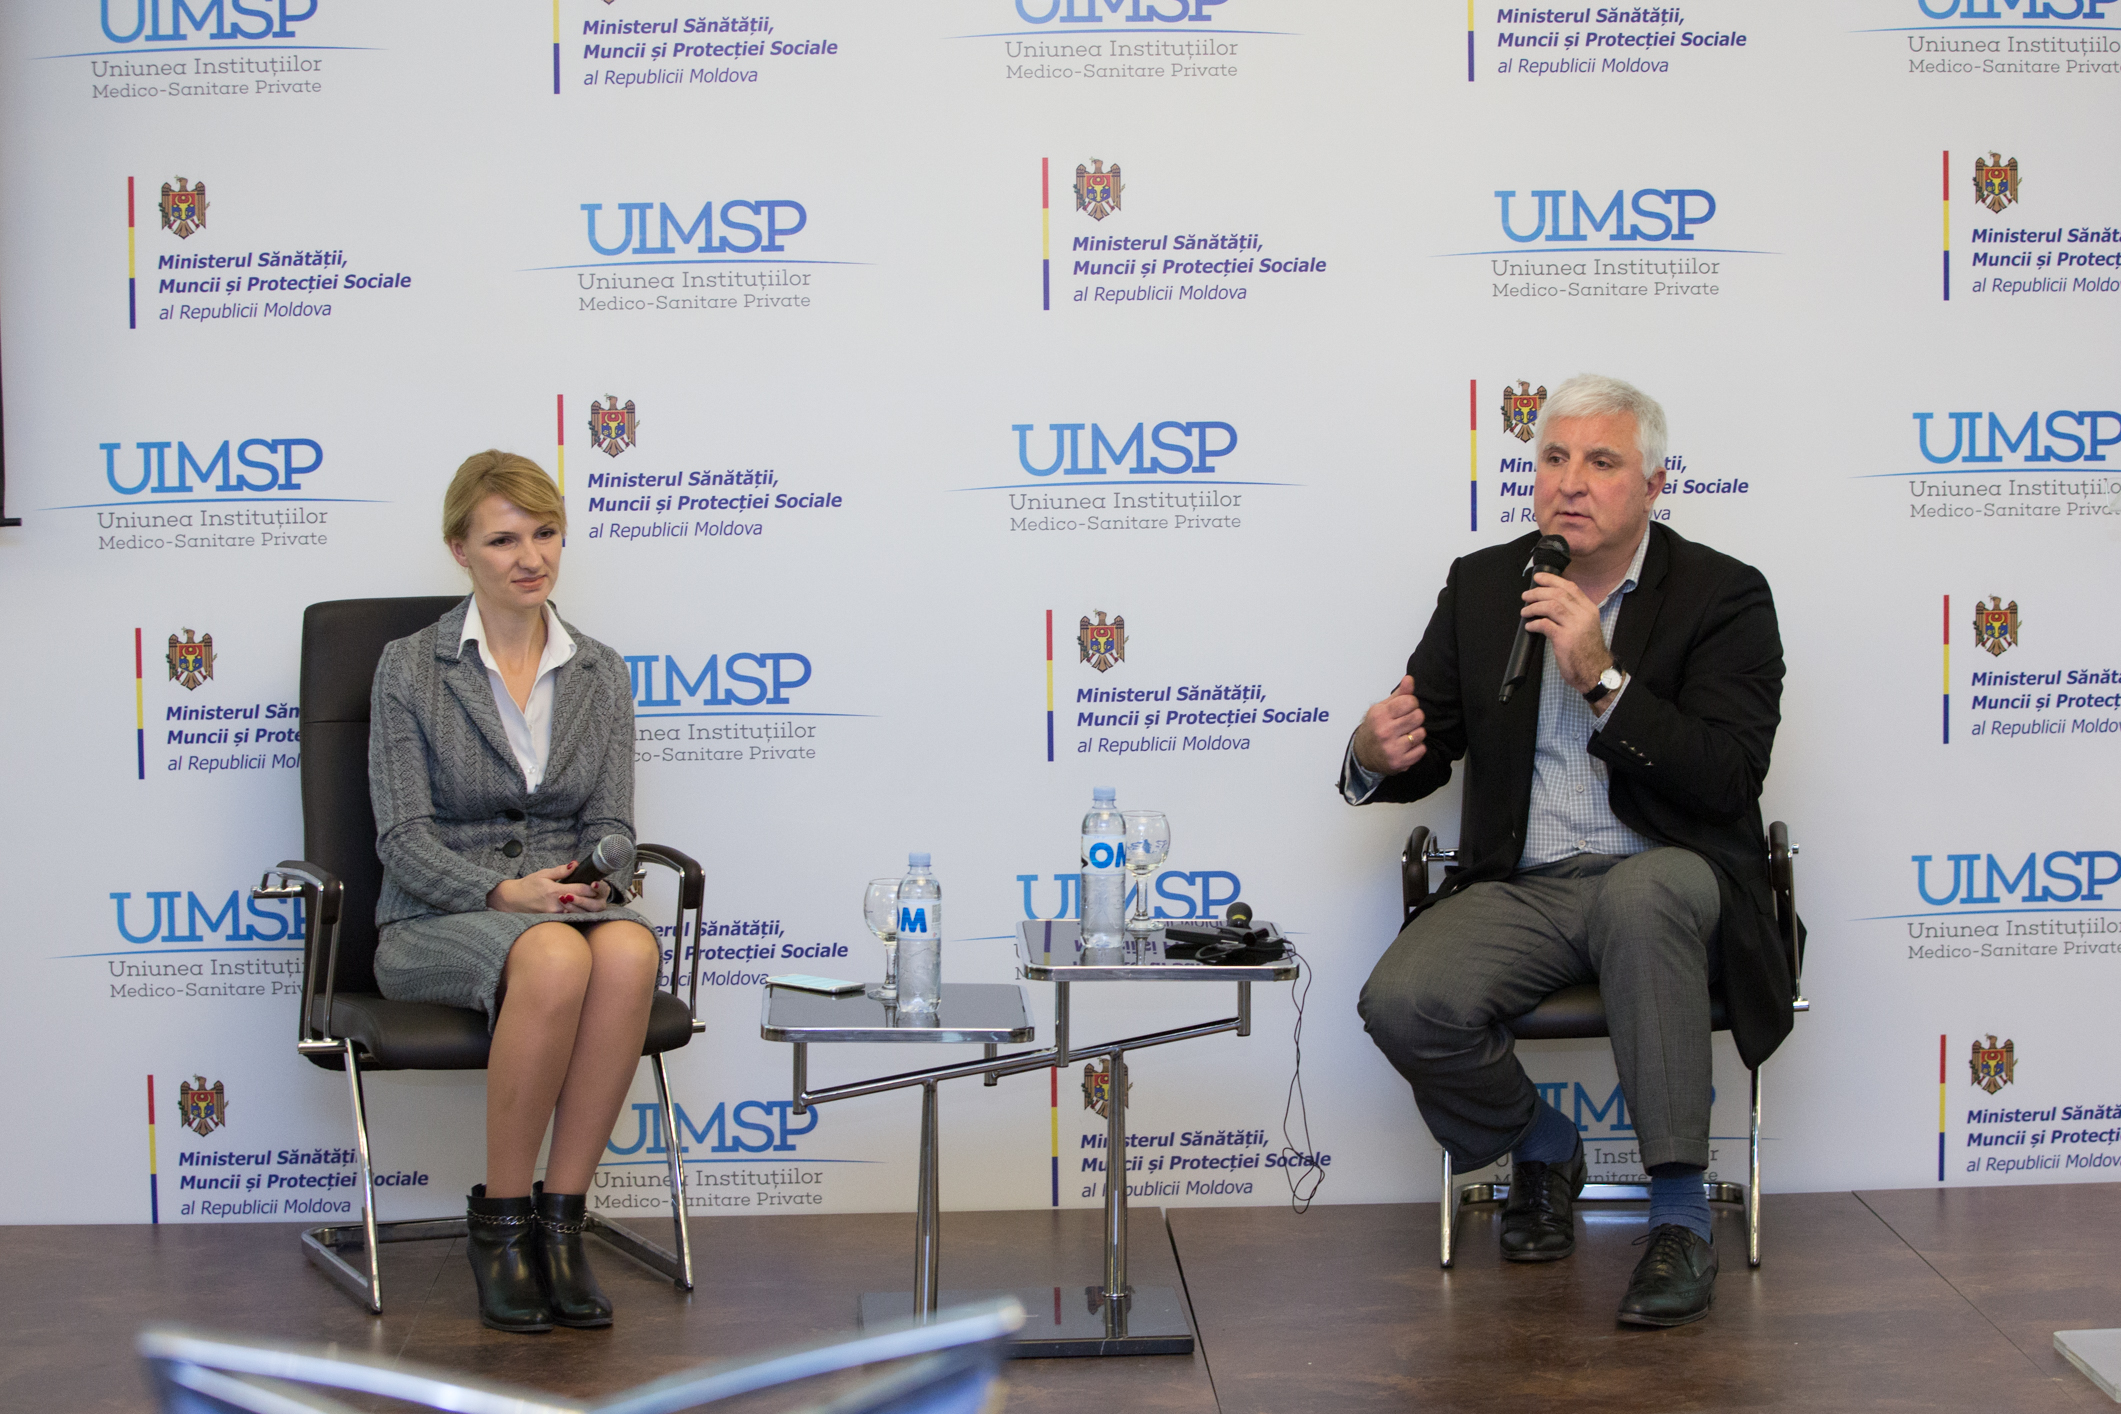 Качество медицинских услуг в Молдове обсуждалось на международной конференции